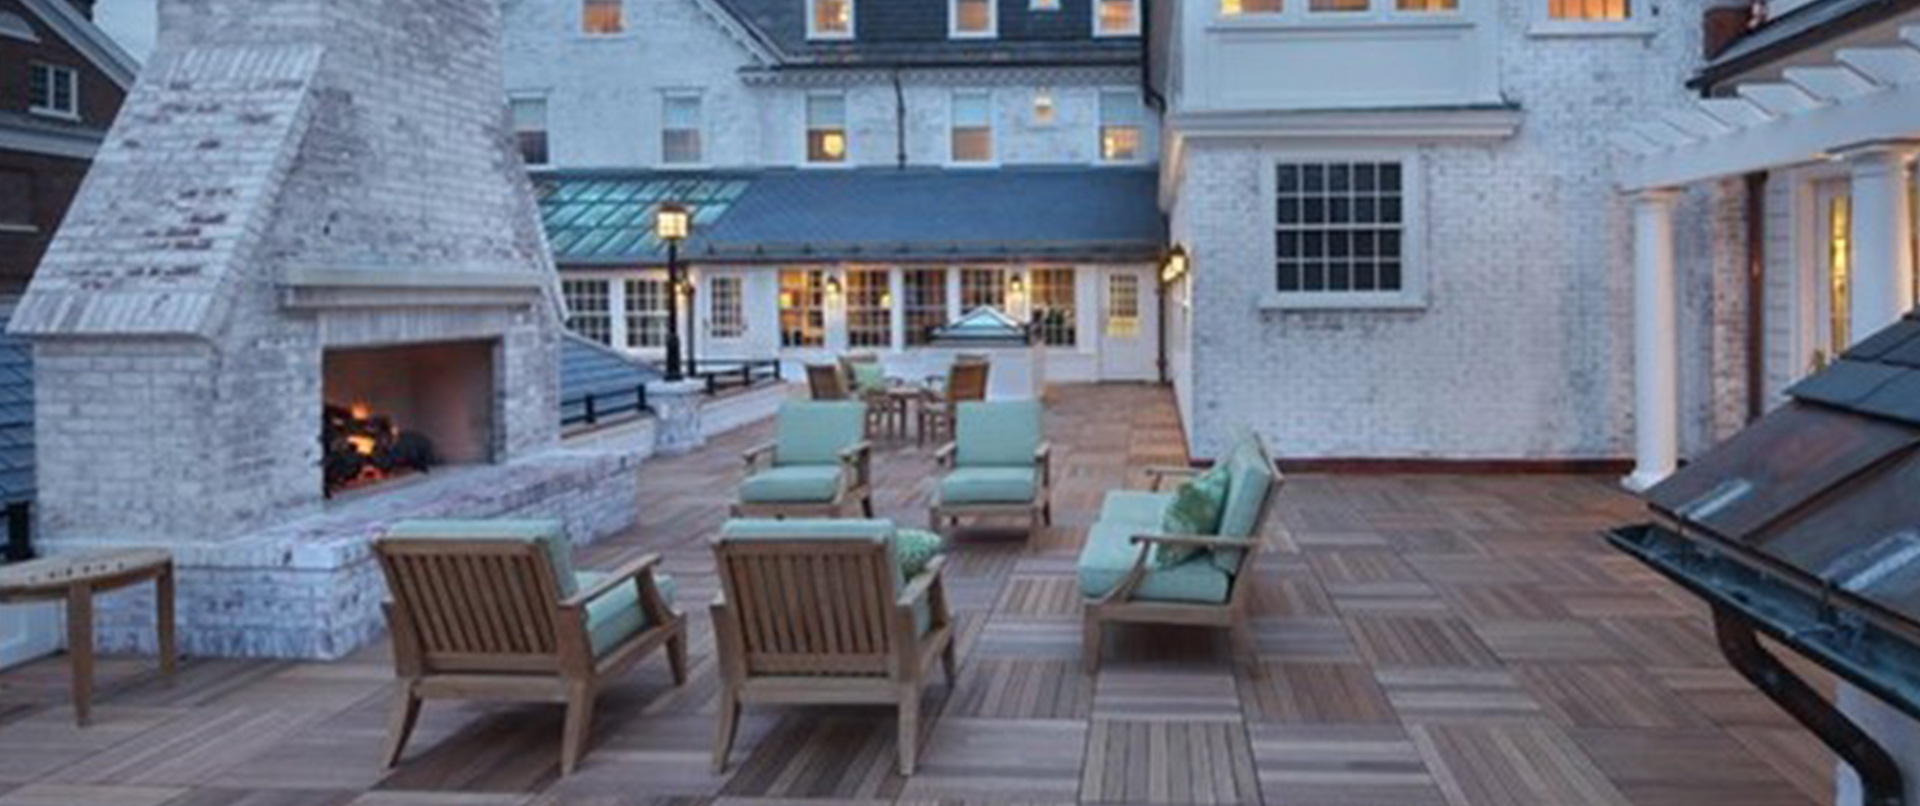 Elegant Rooftop Wood Tiled Deck